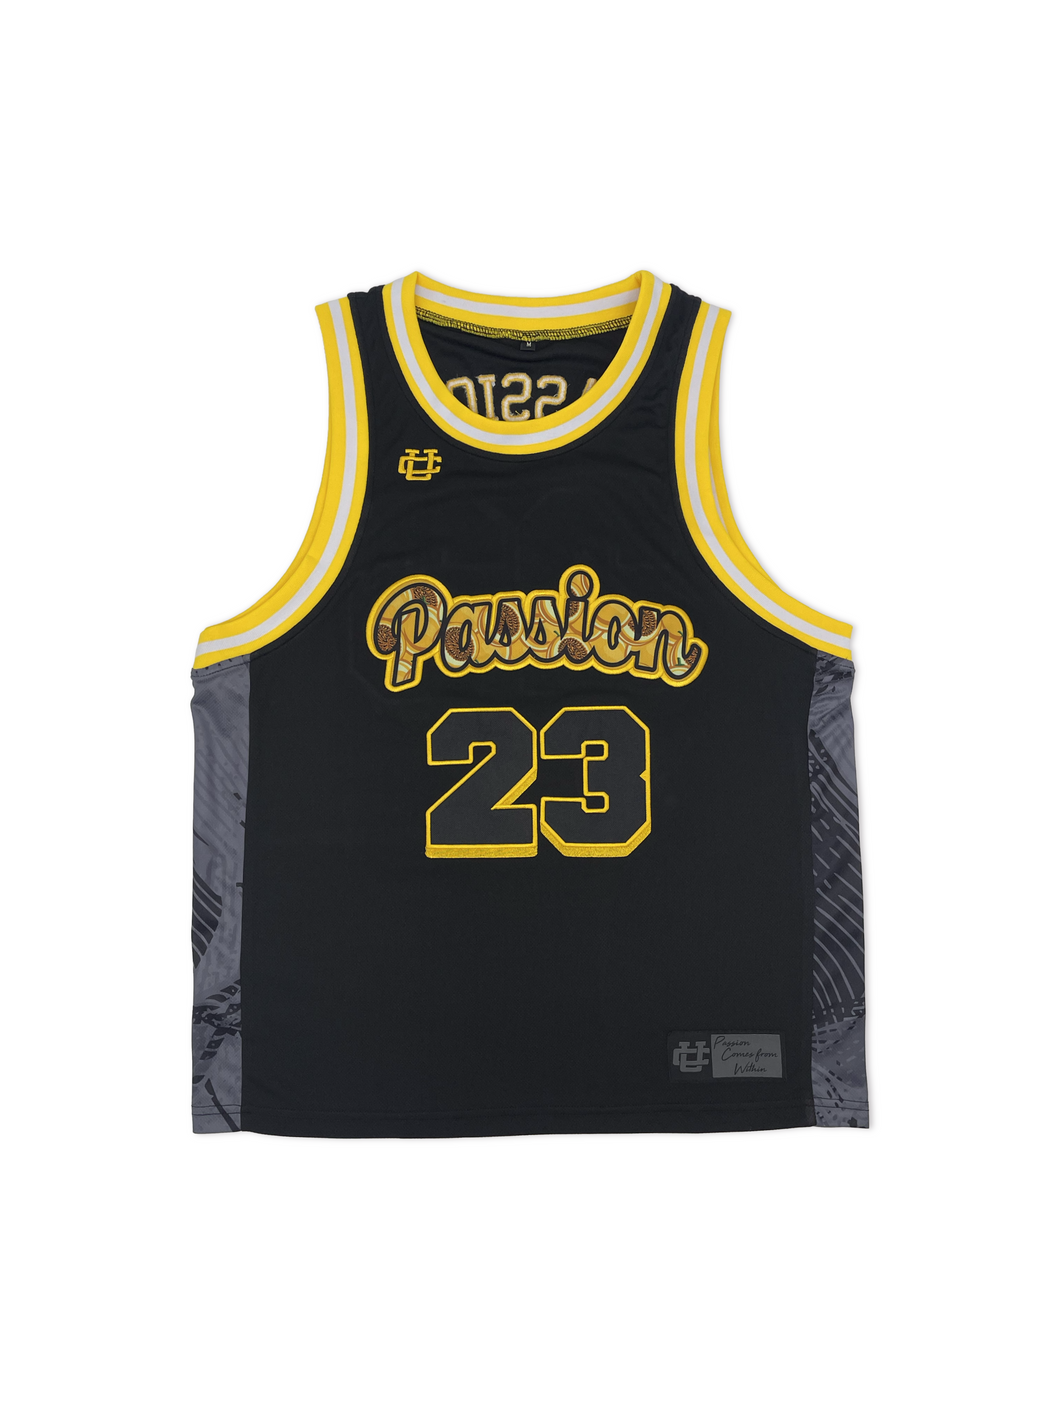 Passion 23 Basketball Jersey